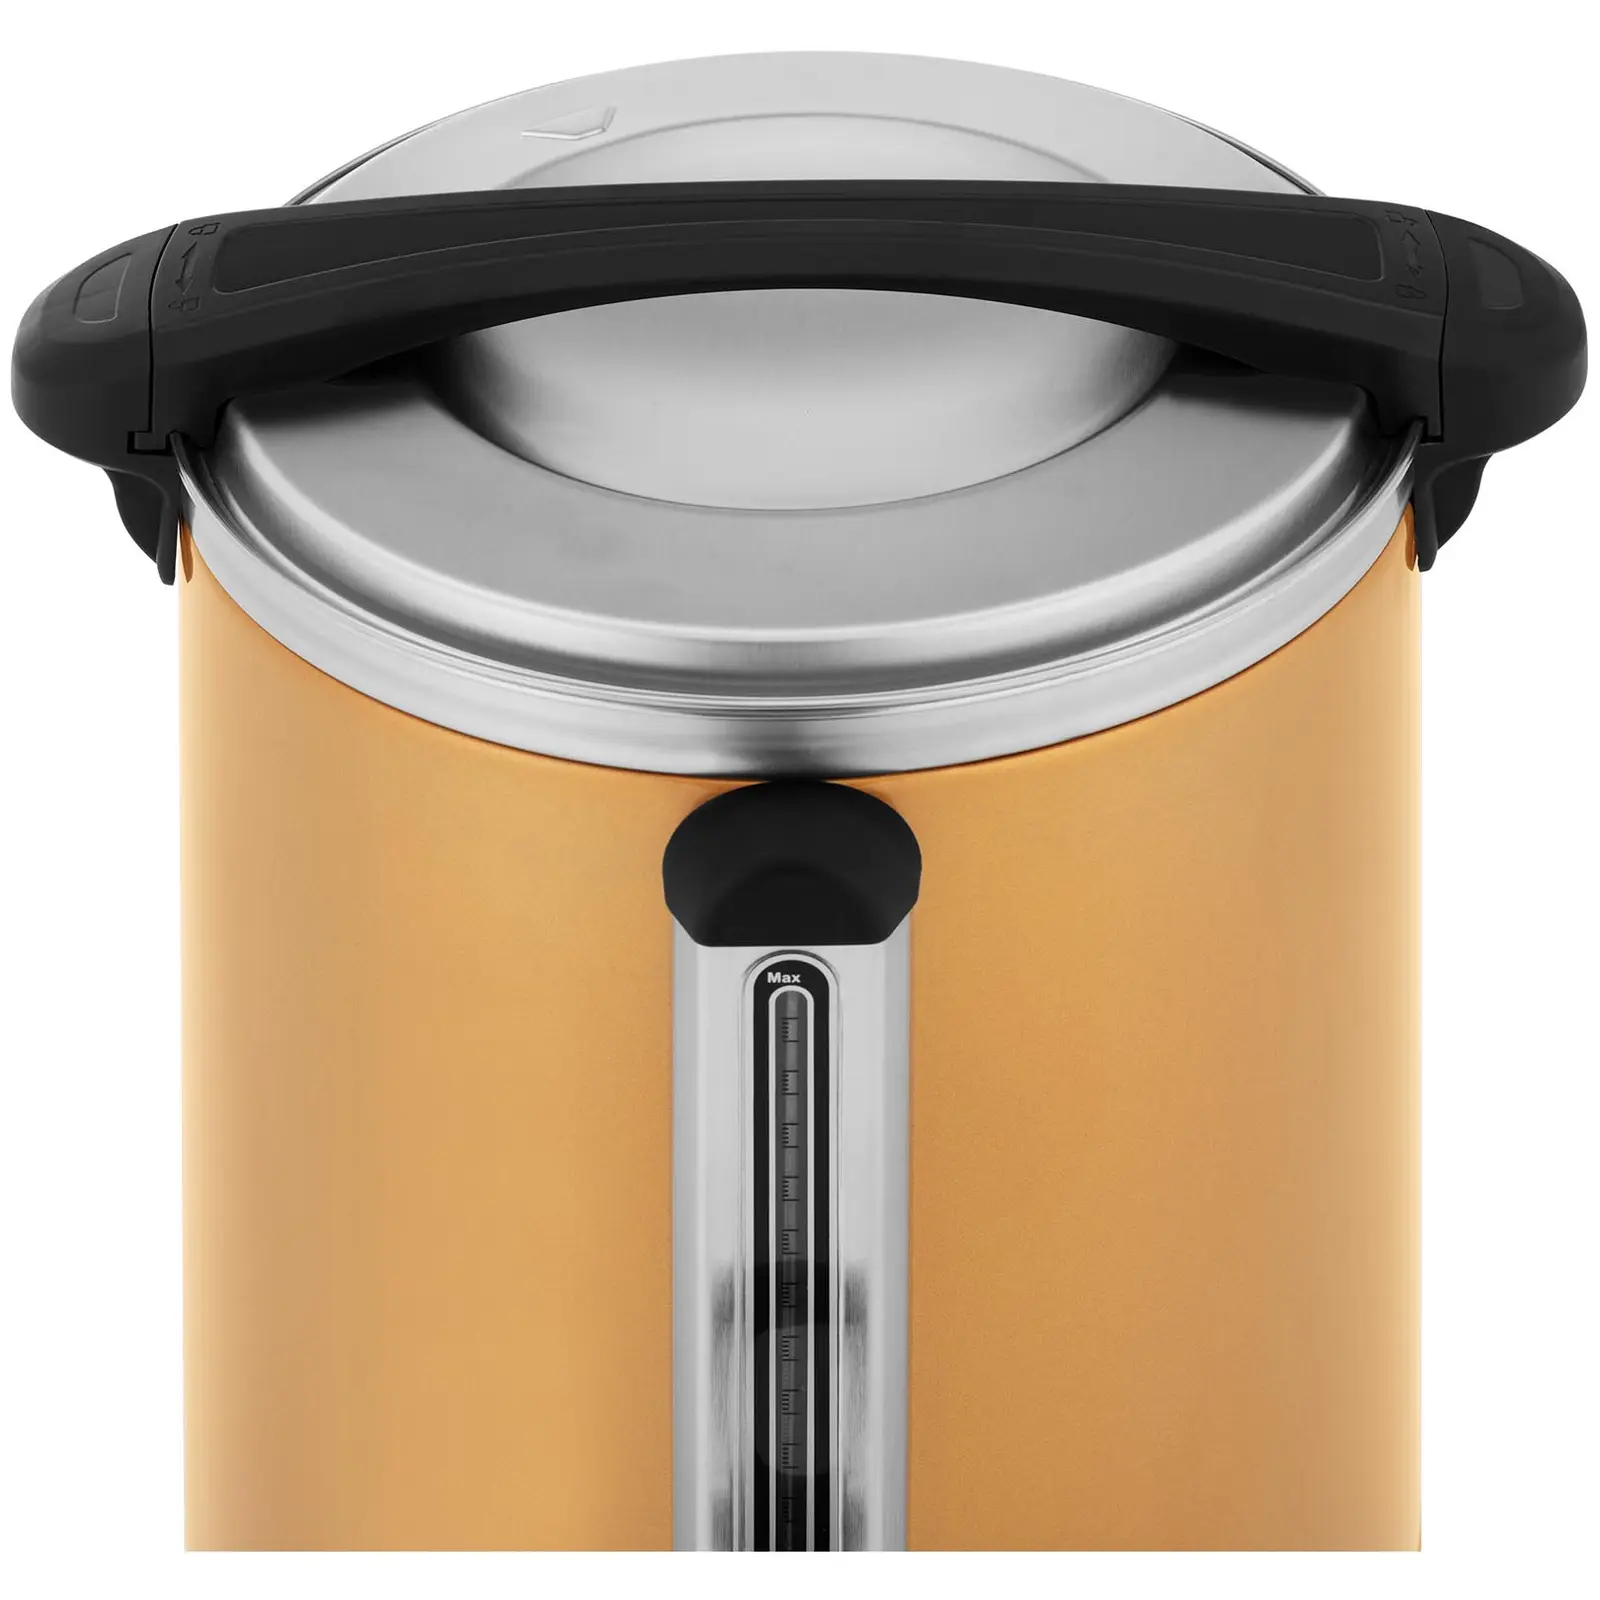 Kaffemaskine - 14 l - guldfarvet - Royal Catering